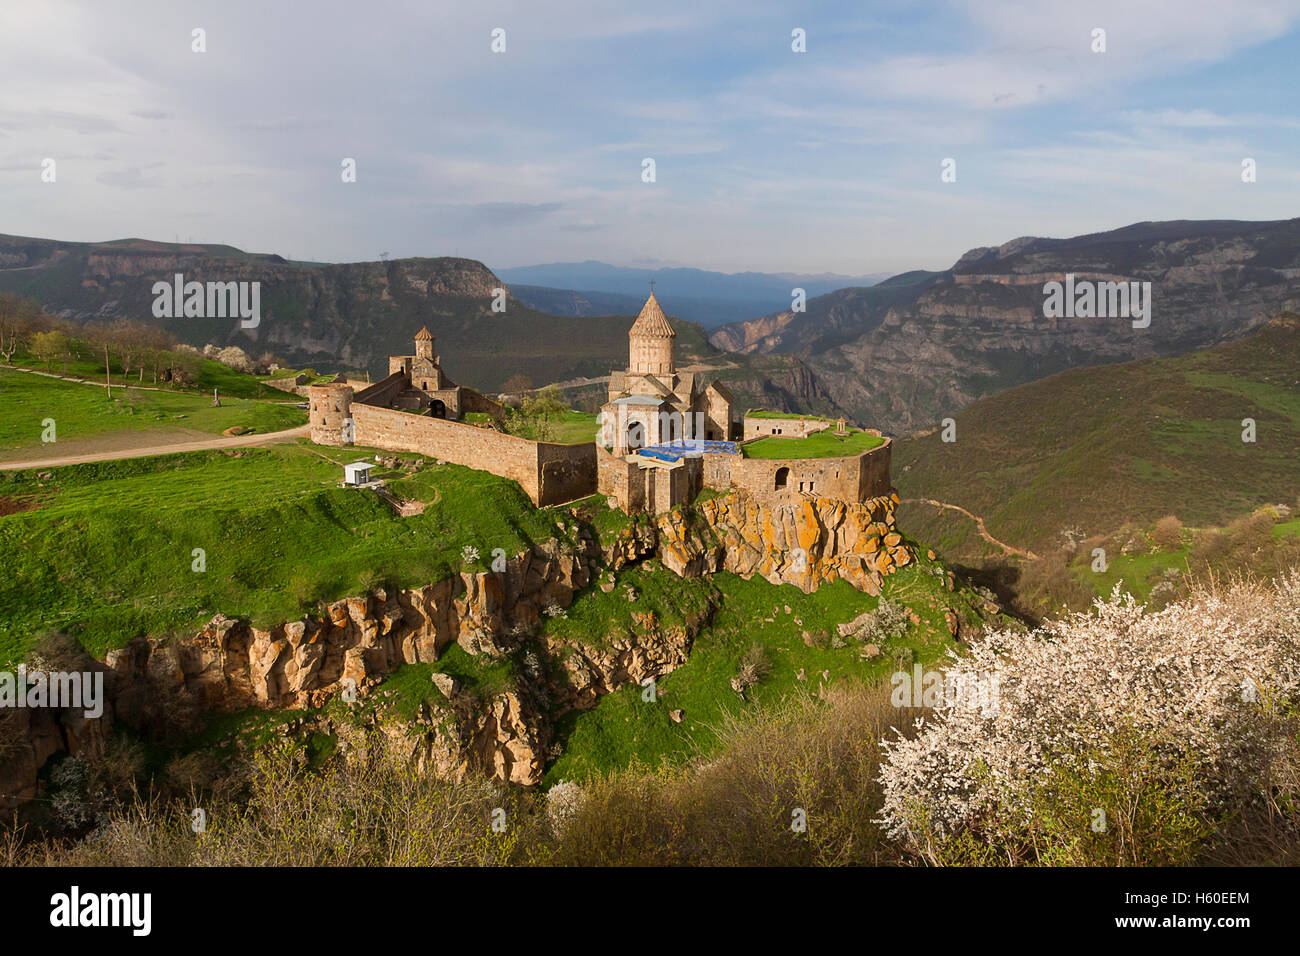 El monasterio Tatev, en Armenia. Foto de stock